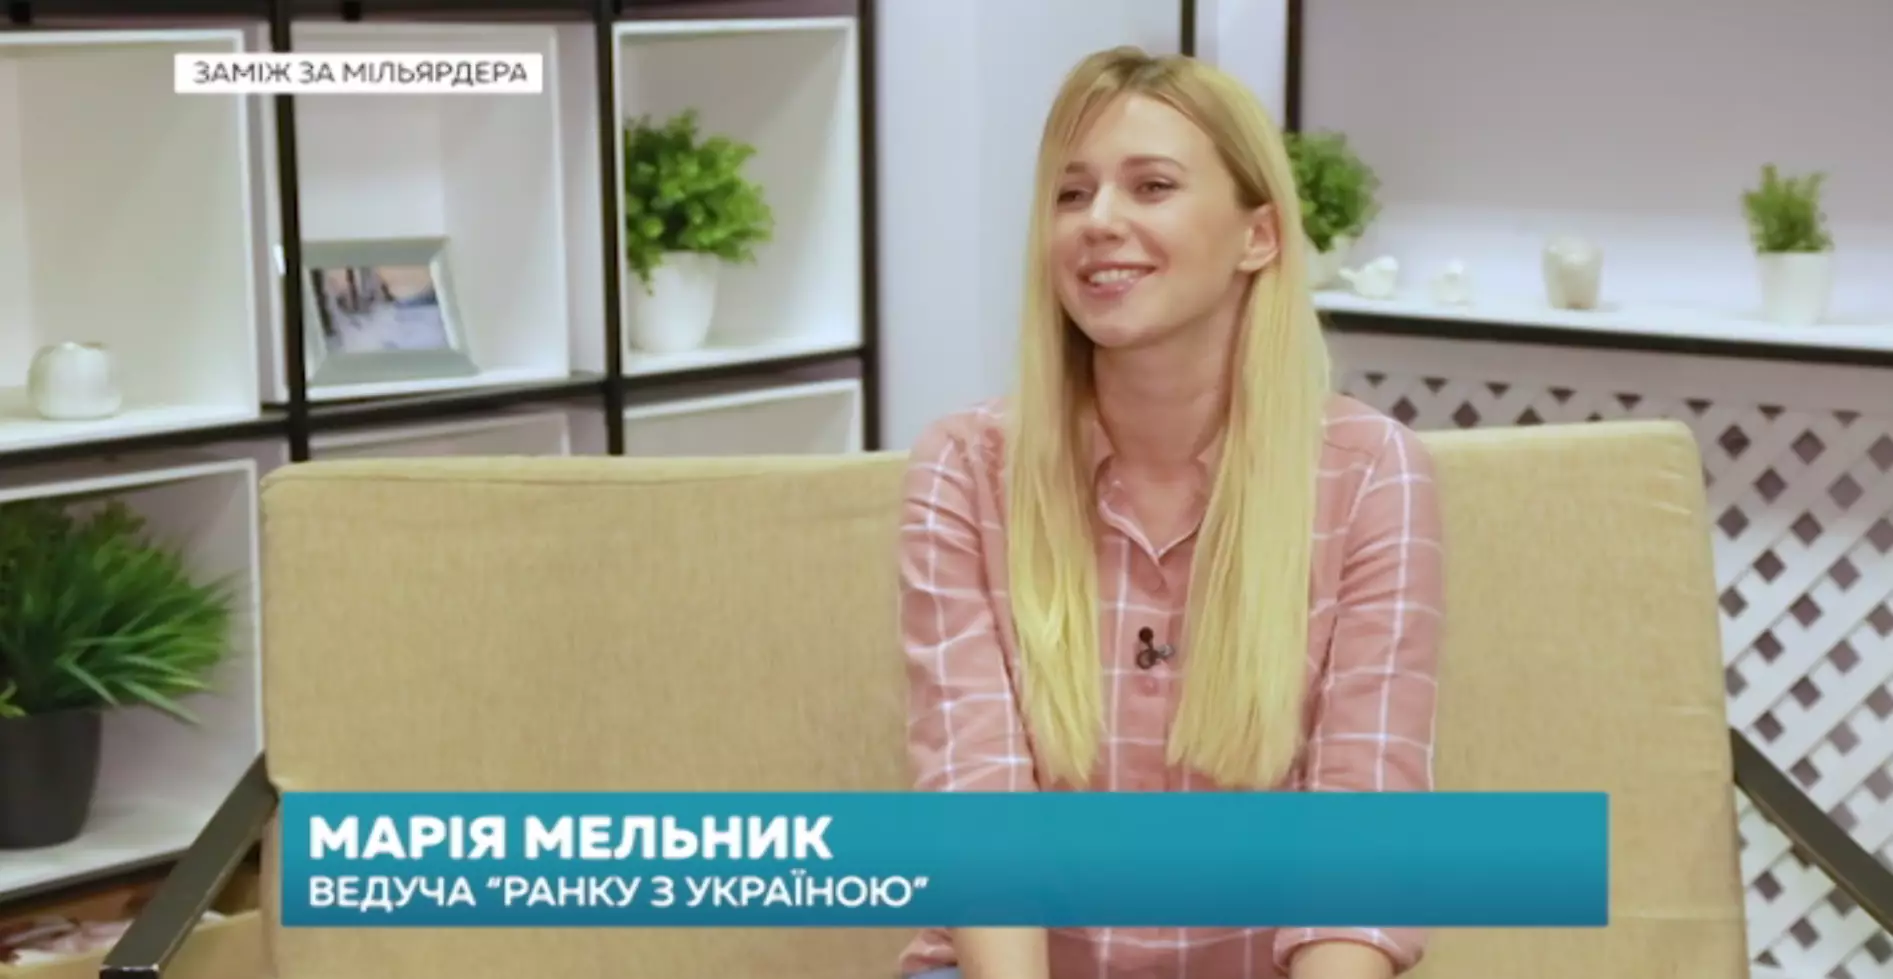 Телеведущая "Ранку з Україною" Мария Мельник готова стать ведущей свадебной церемонии для "лунных" молодоженов